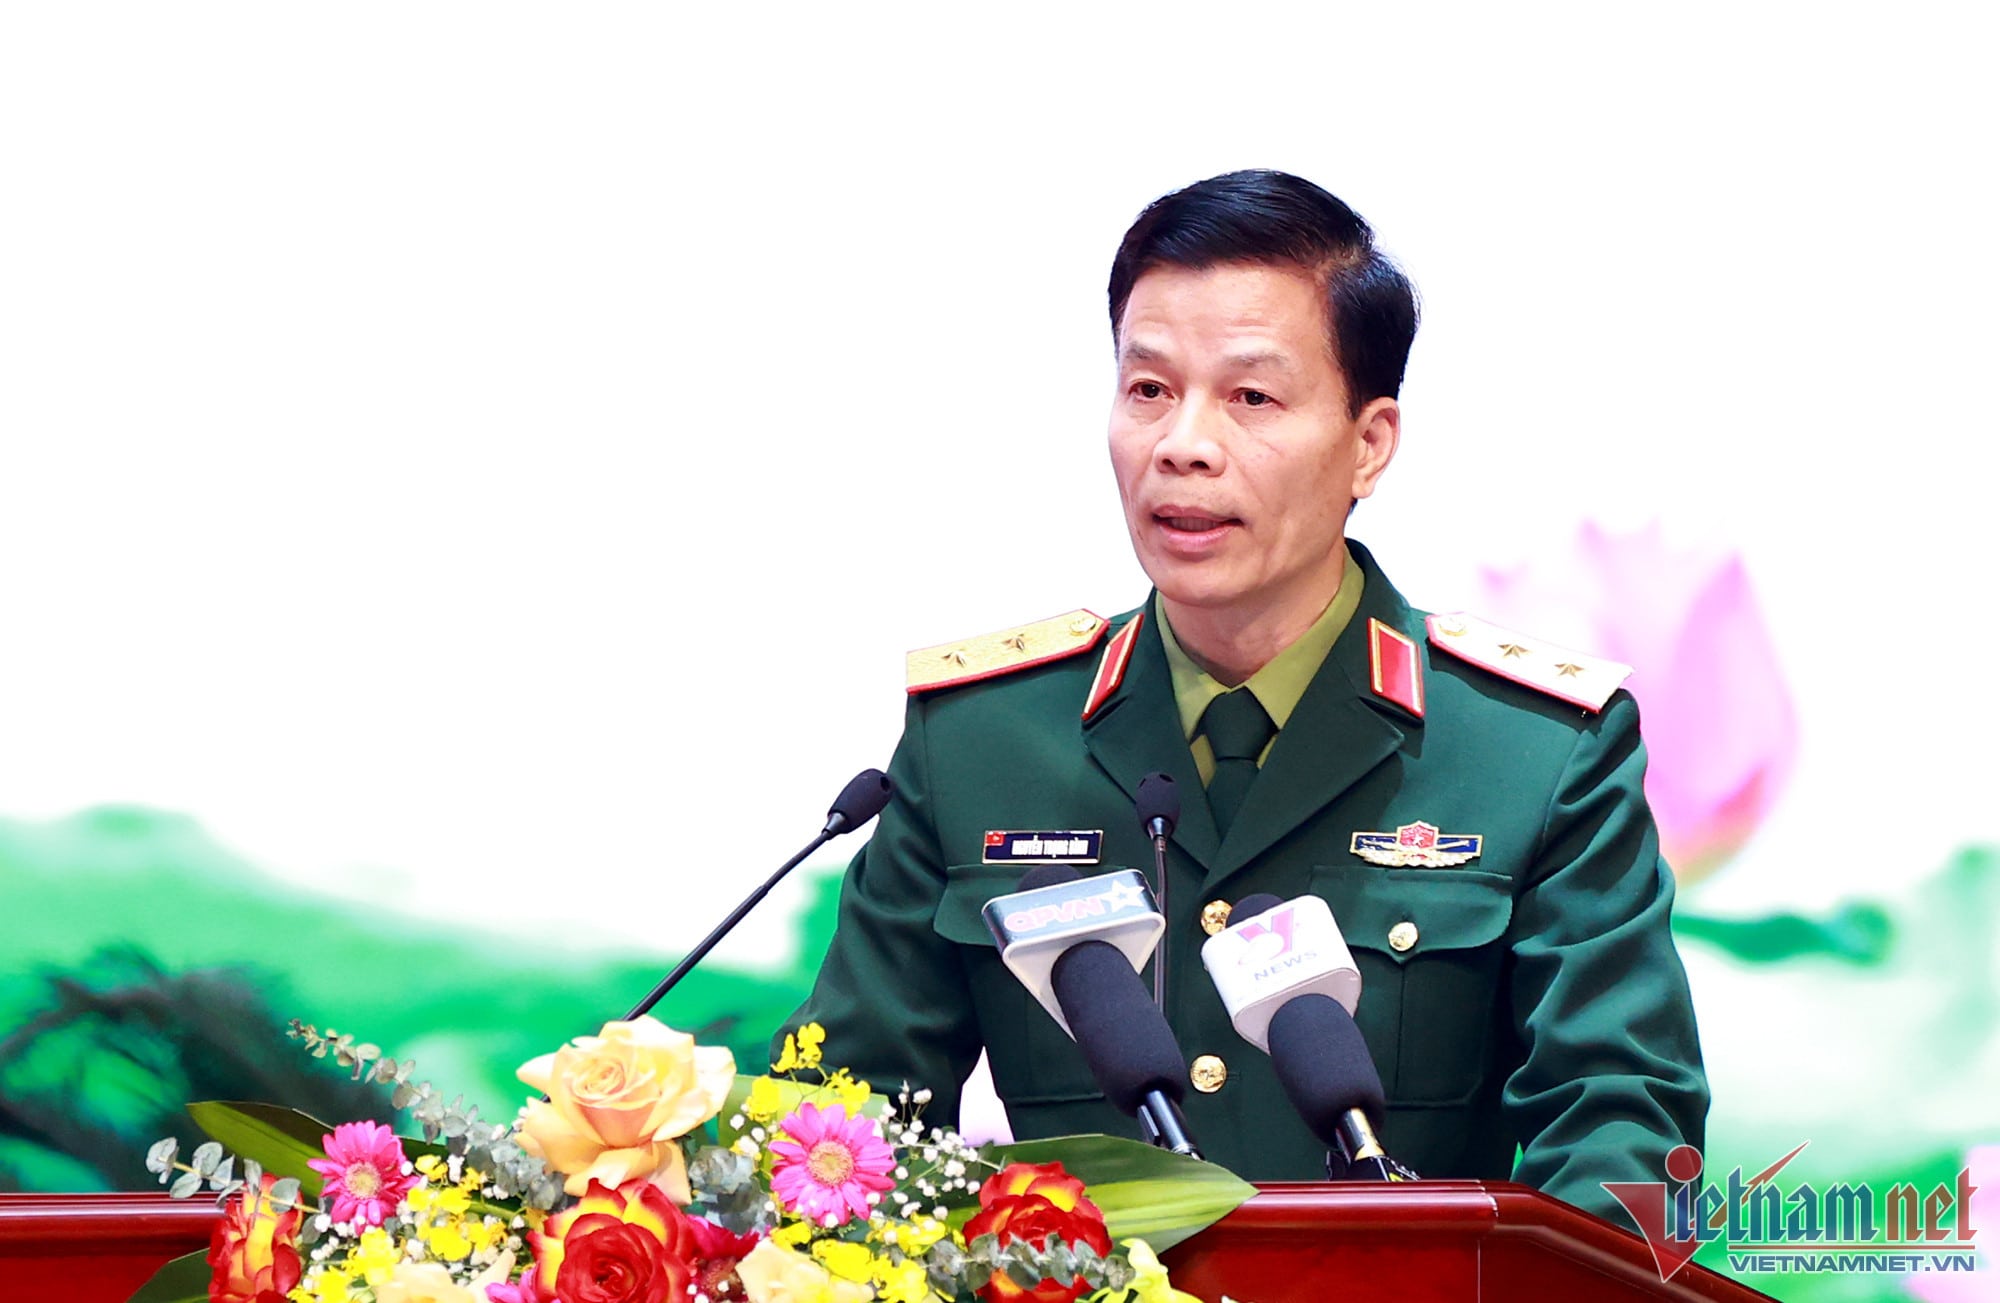 Trung tuong Nguyen Trong Binh min - Điều chưa từng có tiền lệ khi Quân đội Việt Nam cứu hộ, cứu nạn tại Thổ Nhĩ Kỳ